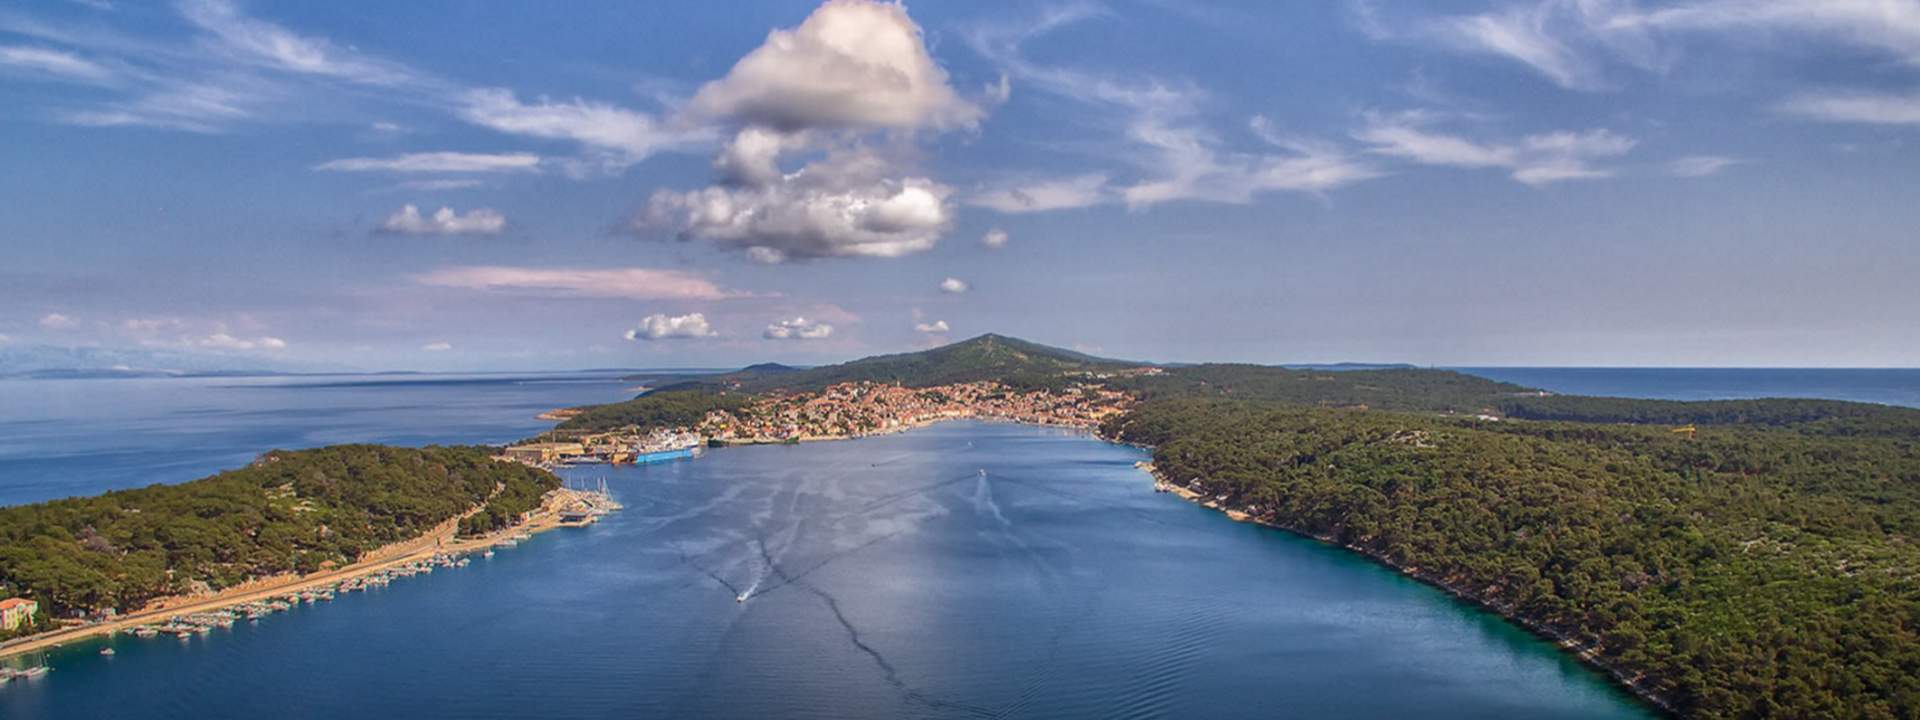 Segeln Sie mit dem Katamaran zu den schönsten kroatischen Inseln